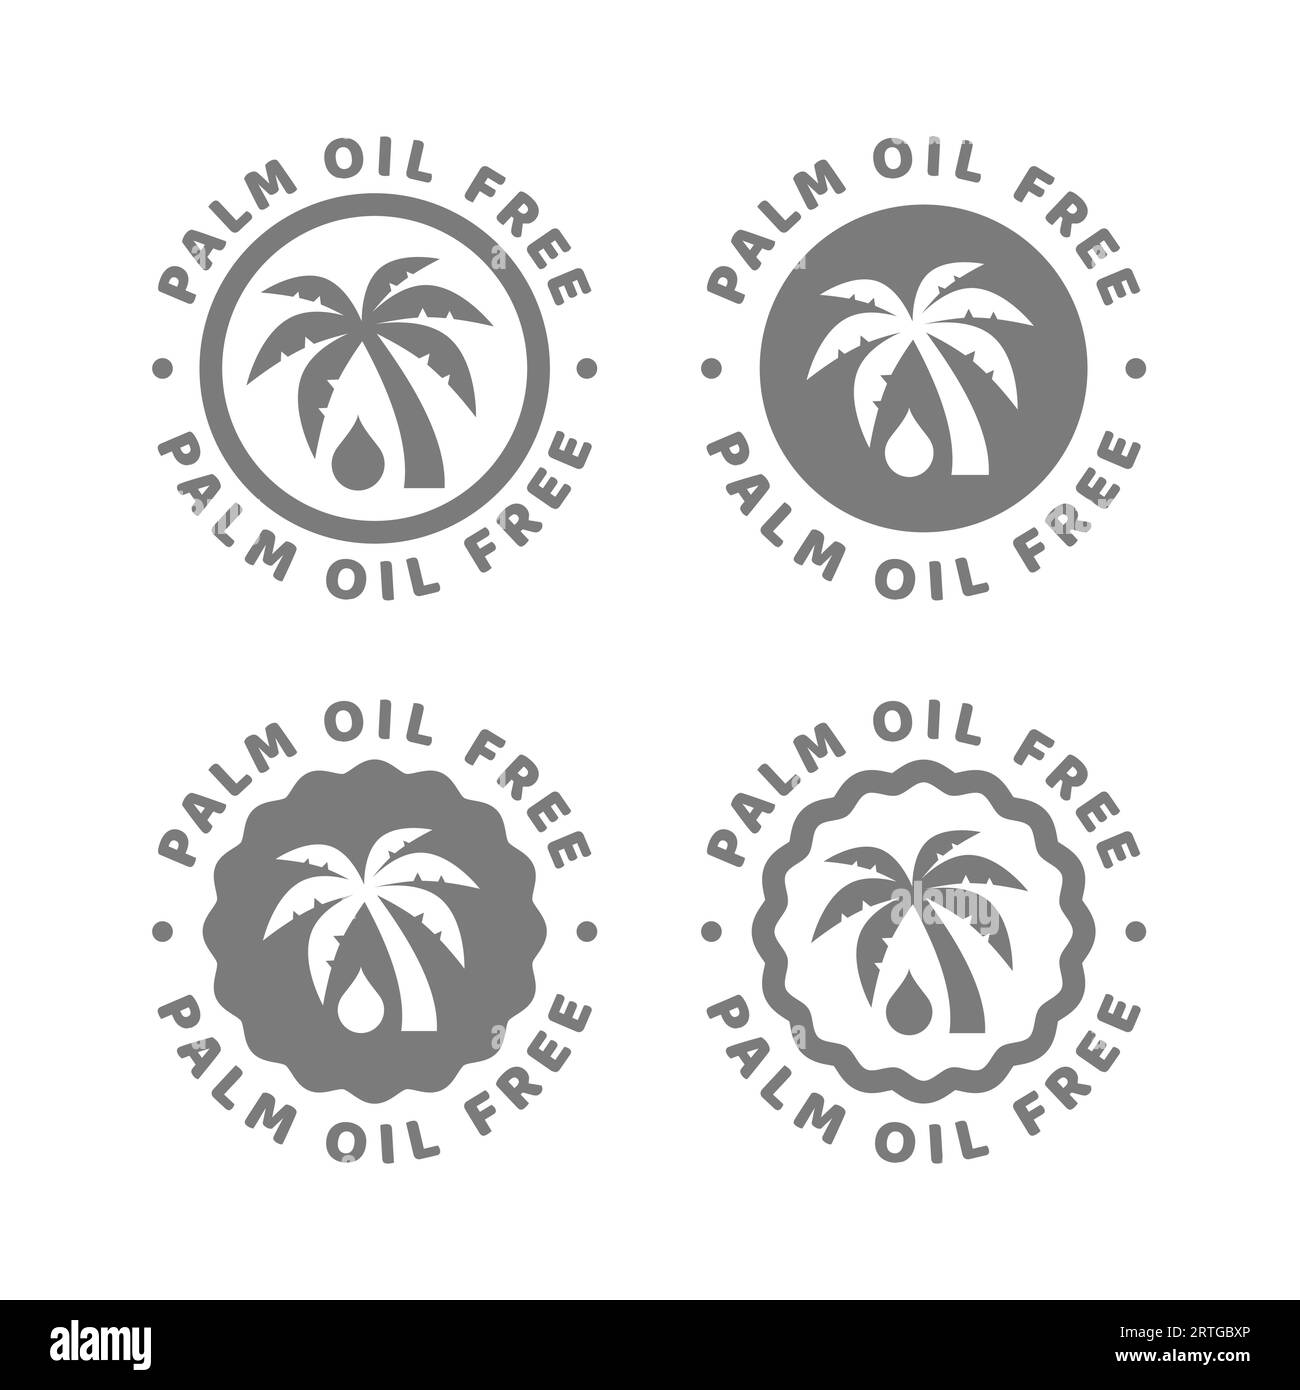 Etichetta vettoriale senza olio di palma. Nessun timbro o adesivo del cerchio con olio di palma. Illustrazione Vettoriale